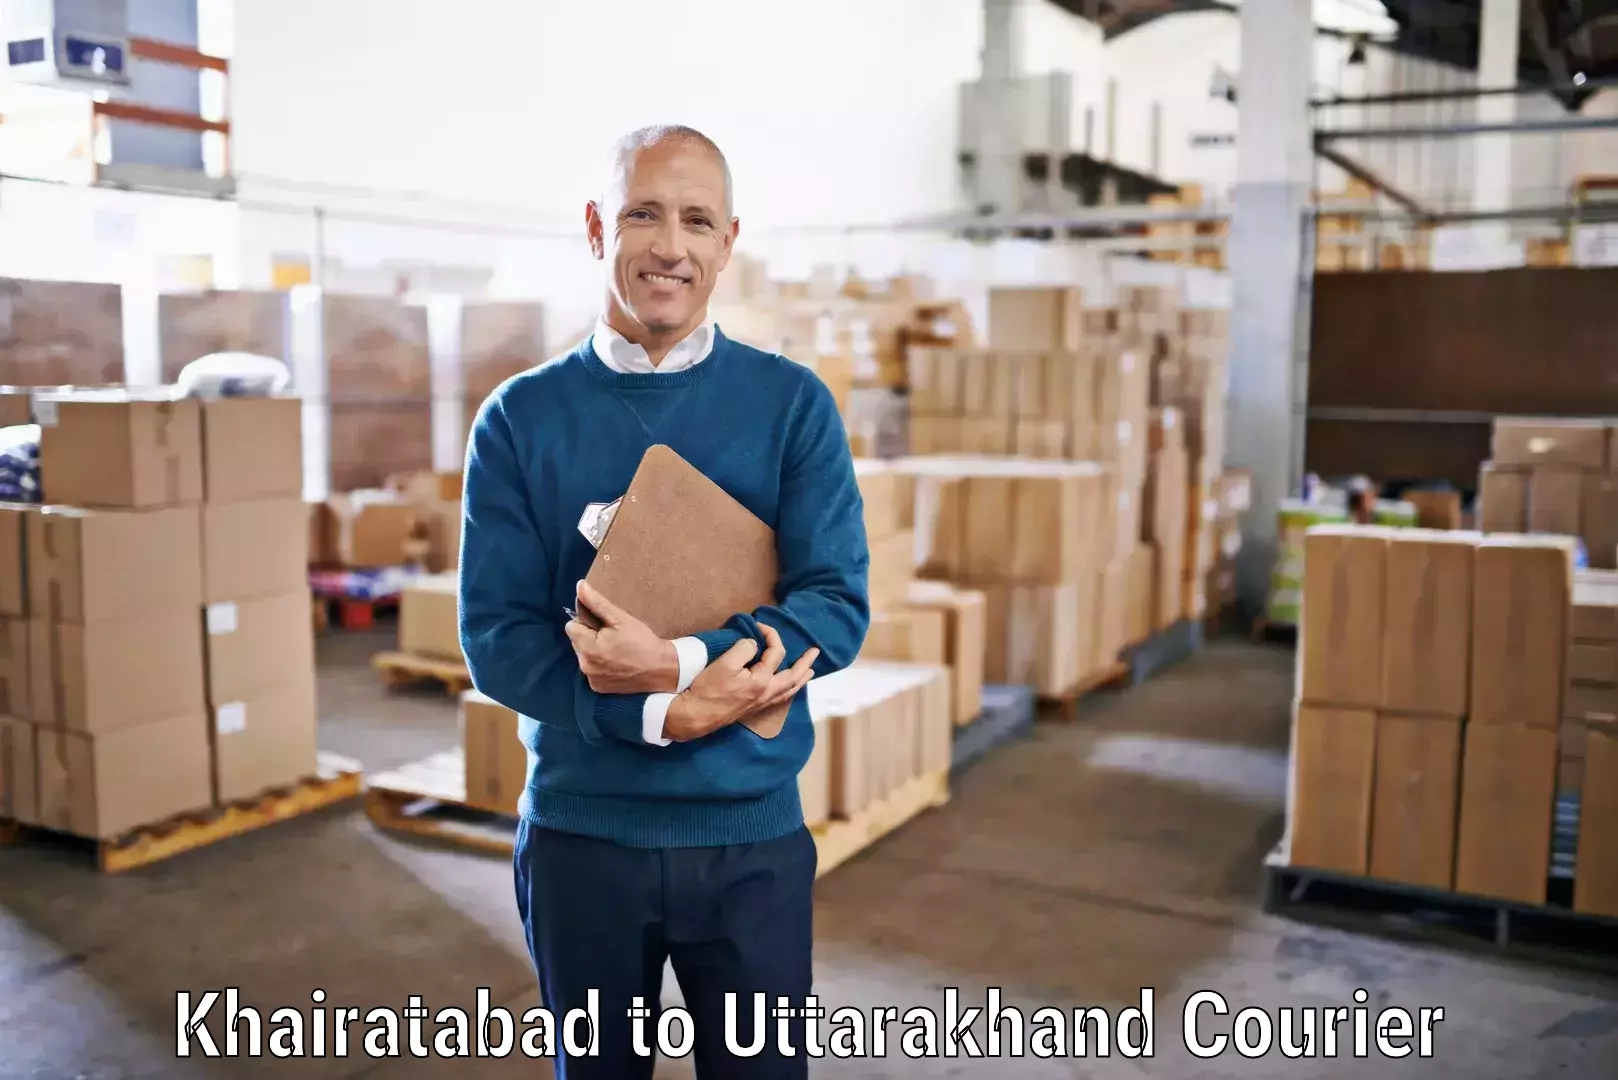 Specialized shipment handling Khairatabad to Uttarkashi